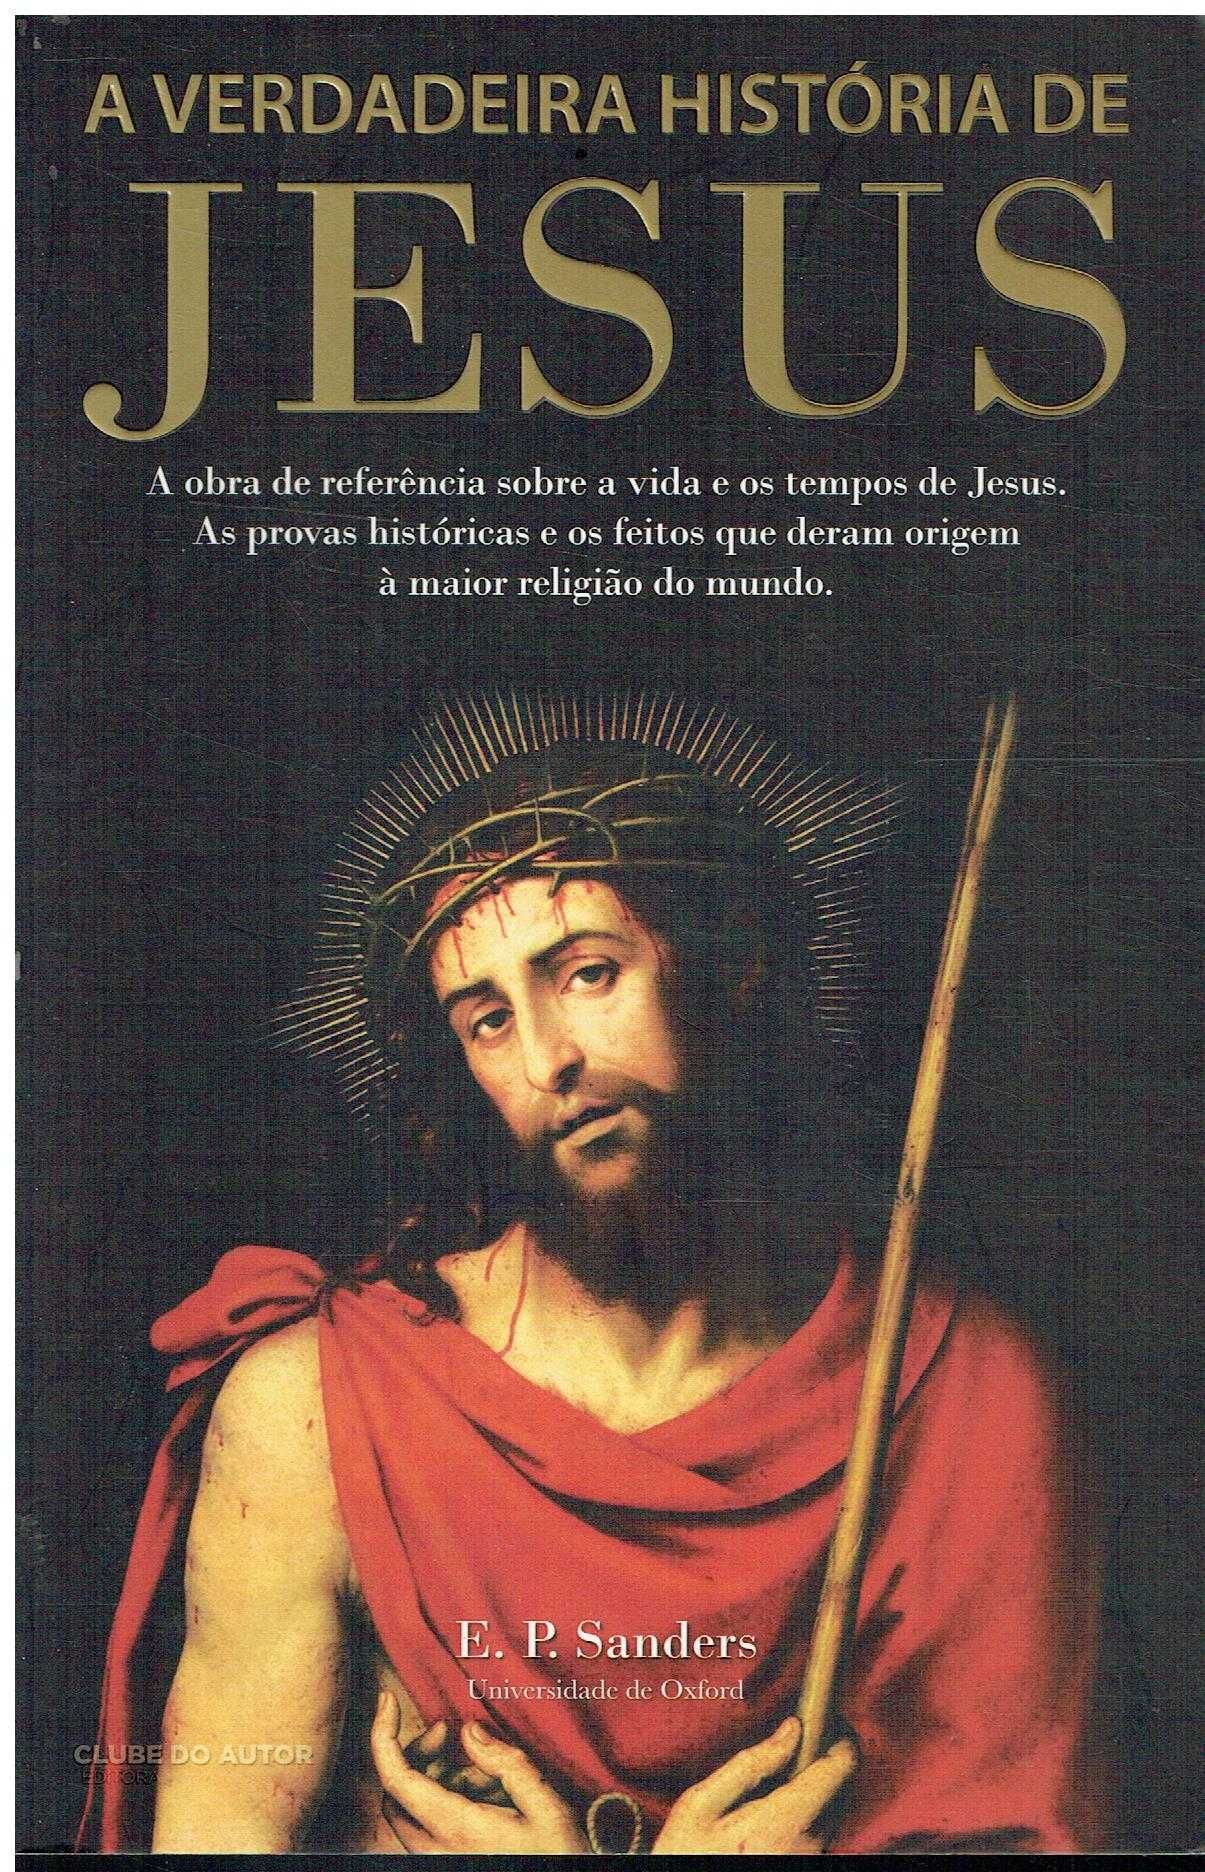 11633

A Verdadeira História de Jesus
de E. P. Sanders